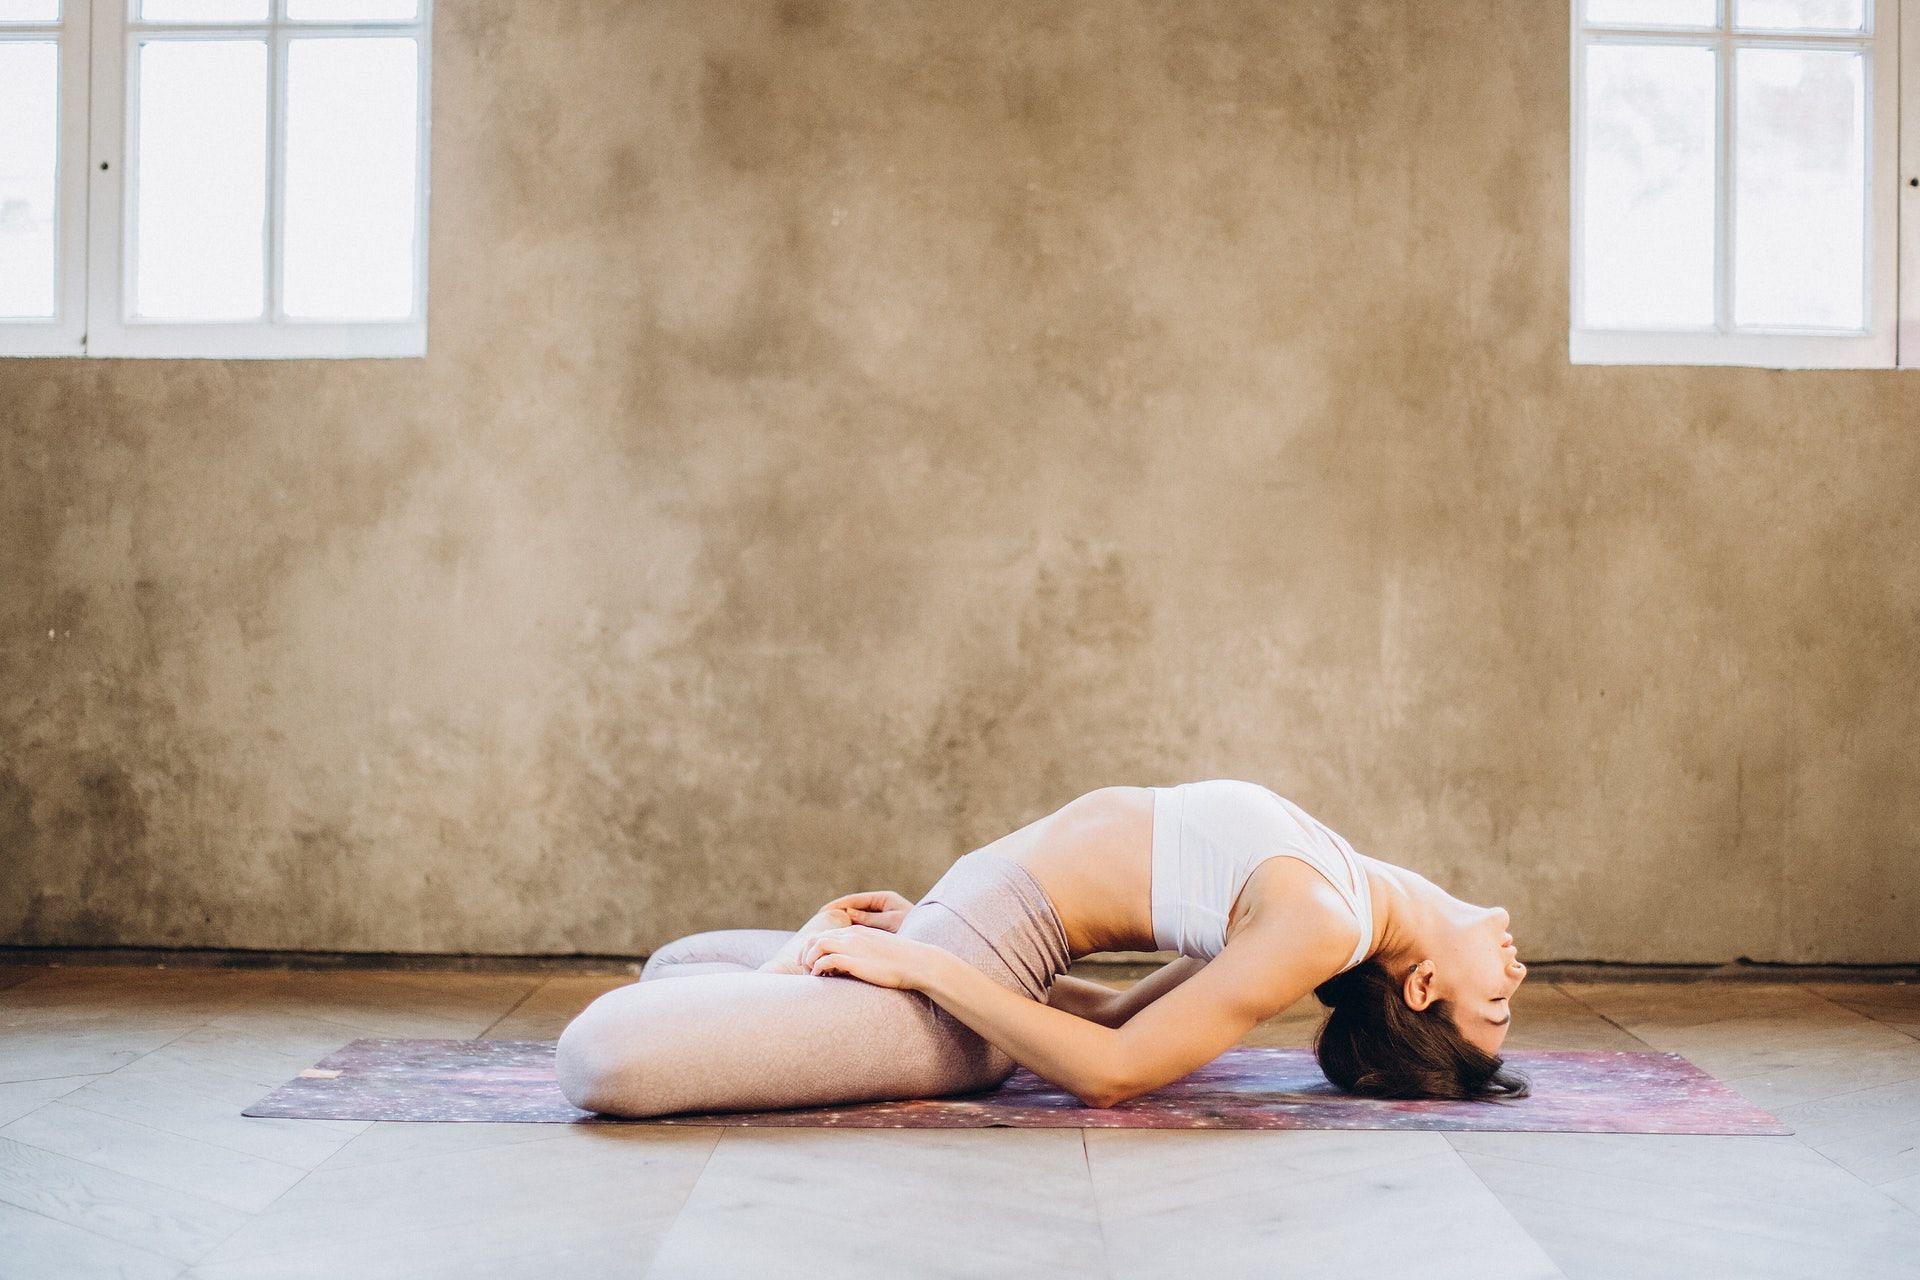 7 Yoga Poses to Align your Sacral Chakra (Svadhisthana)